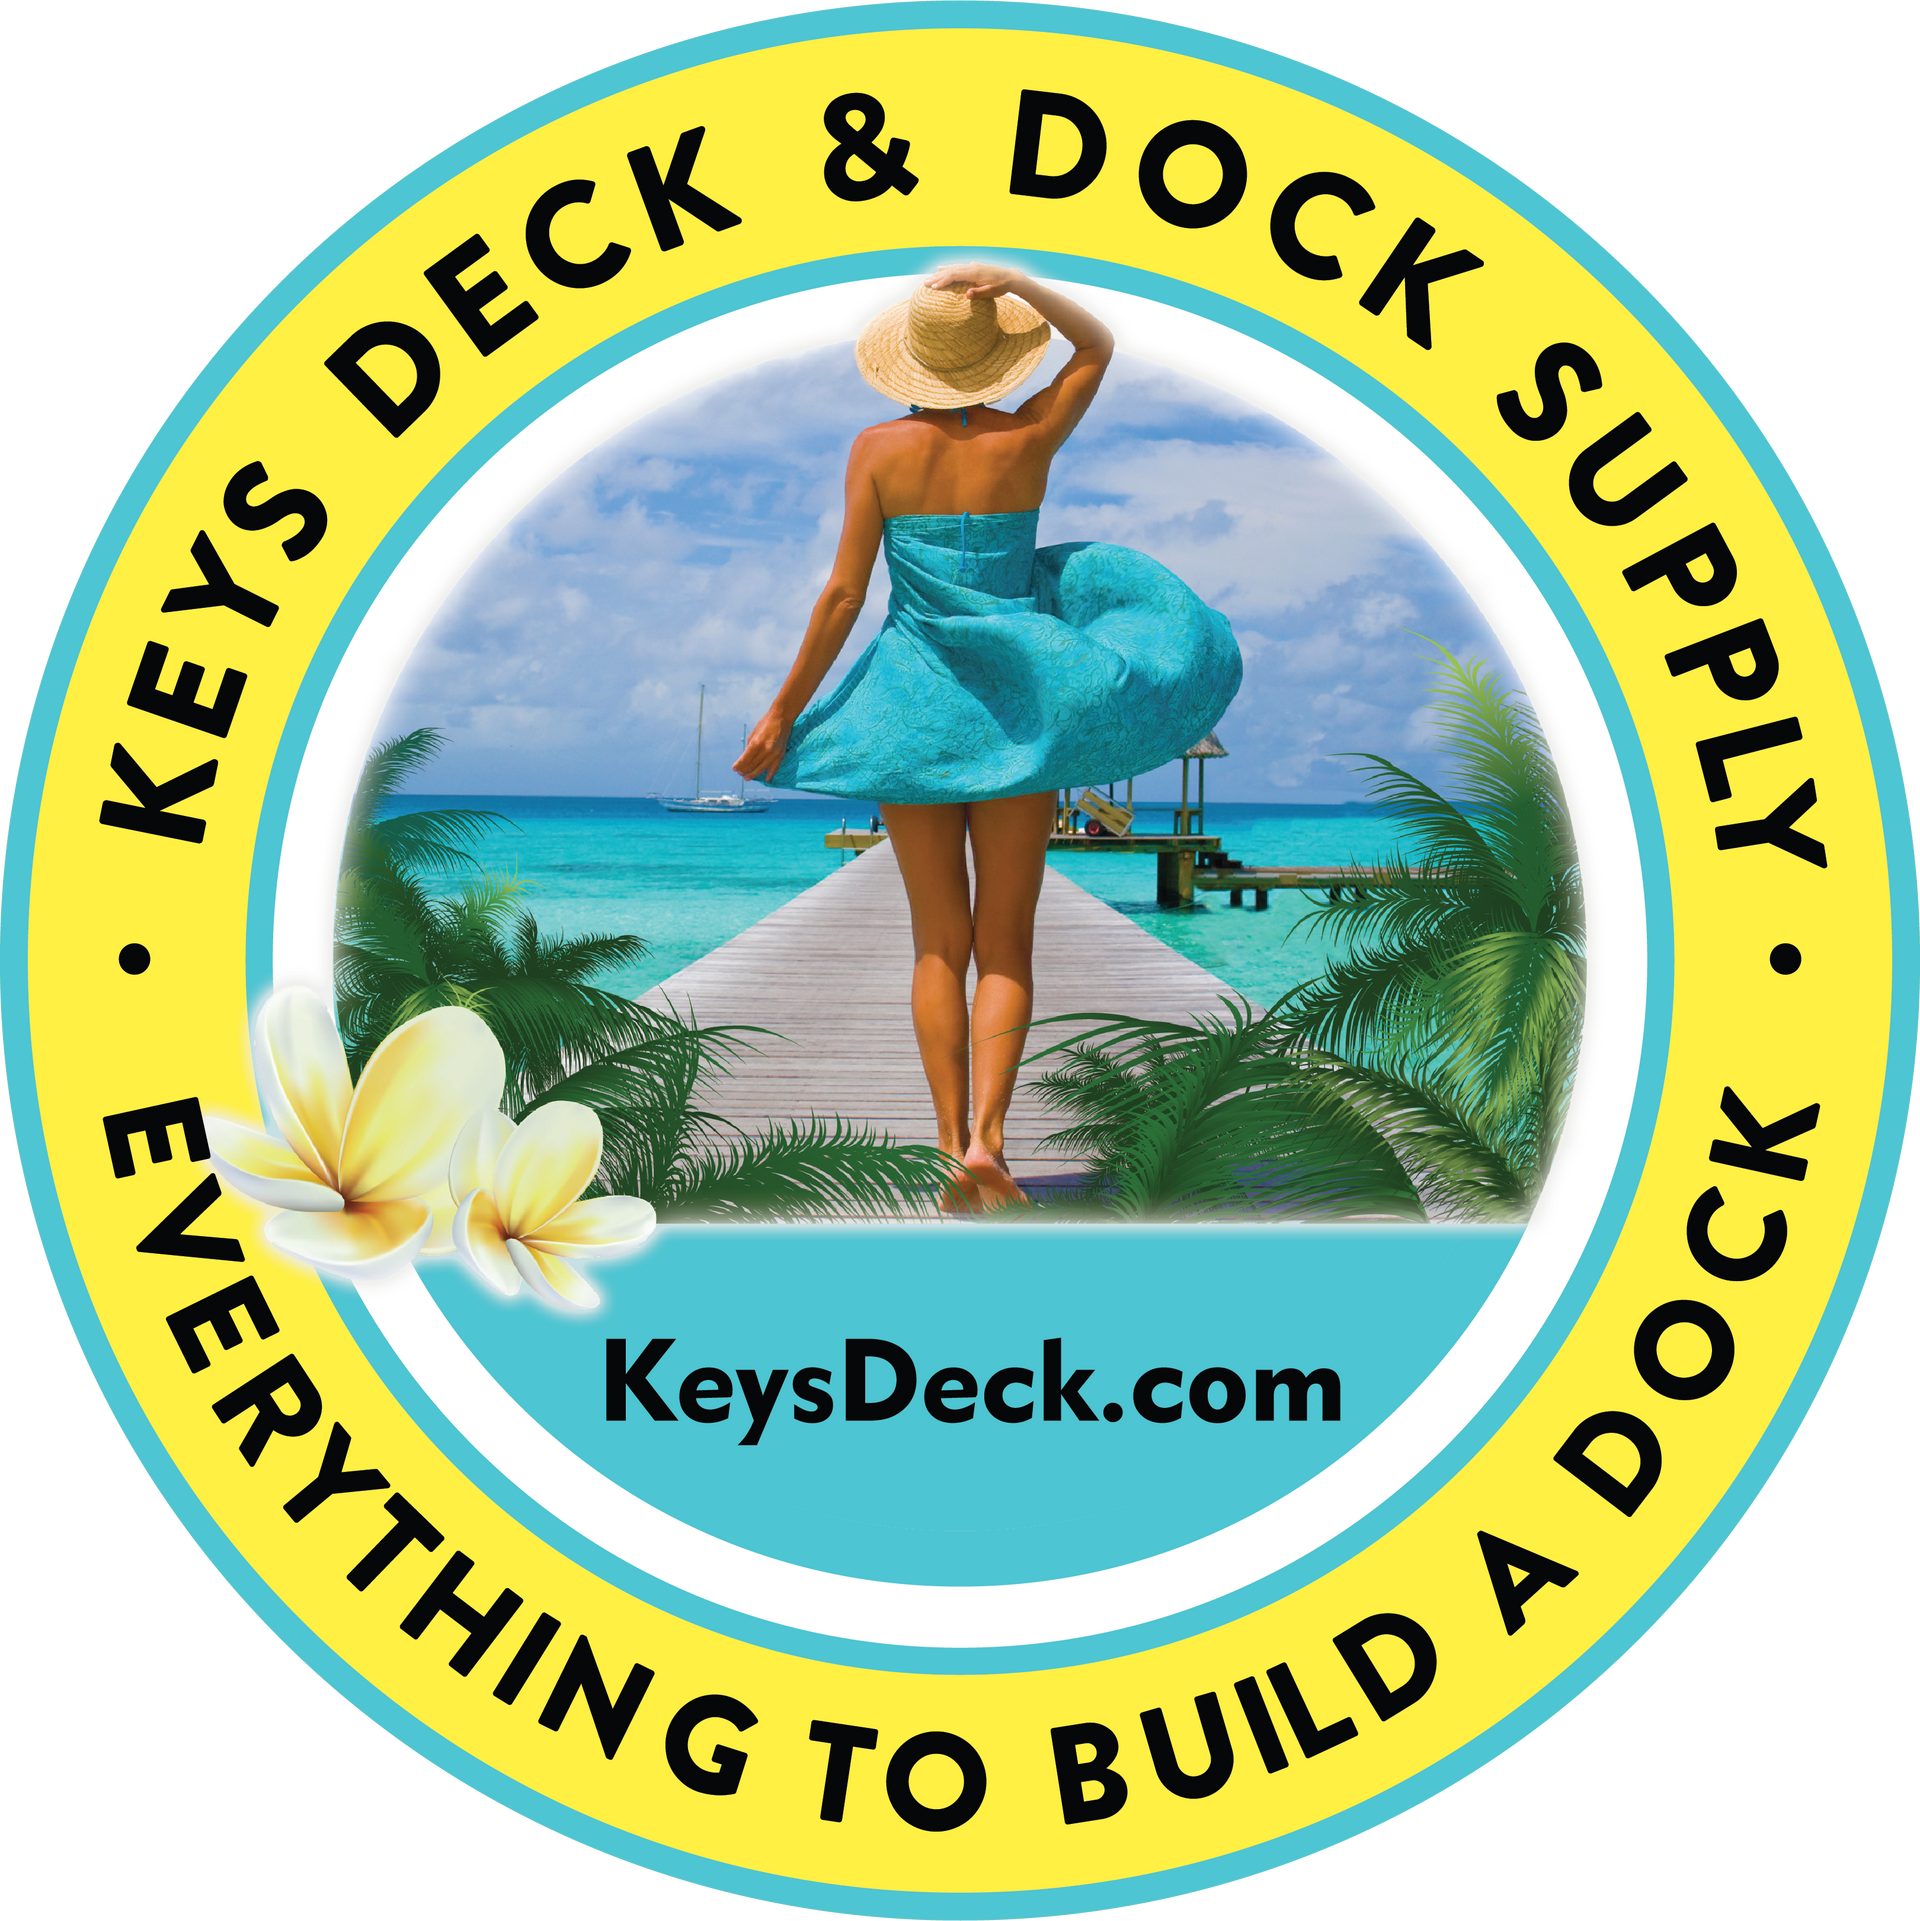 Keys Deck & Dock Supply Logo